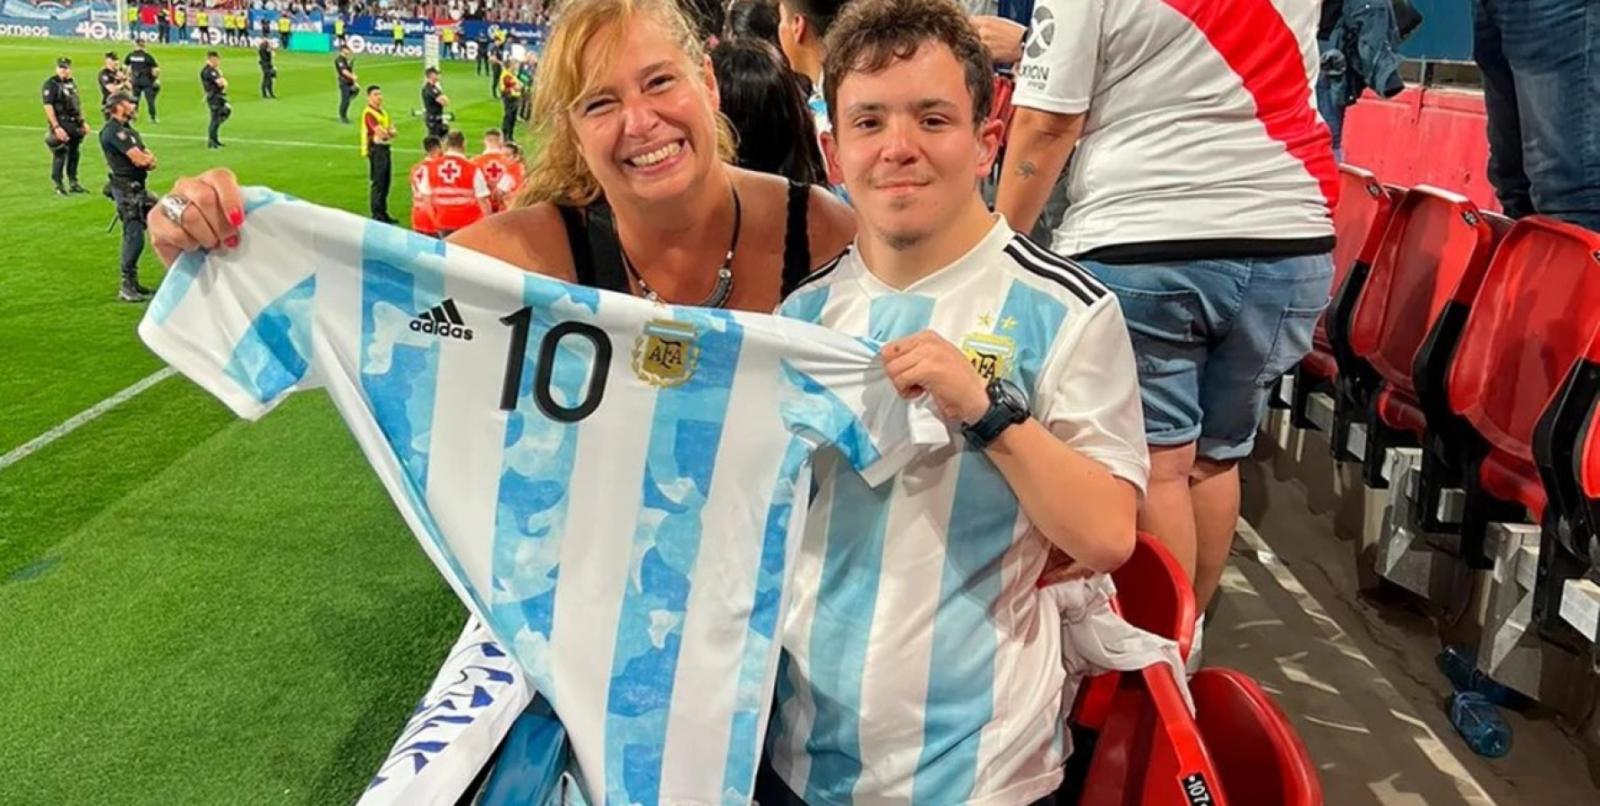 Imagen Después de hacerle 5 goles a Estonia, Messi le regaló su camiseta a Tomás, un fanático santafesino